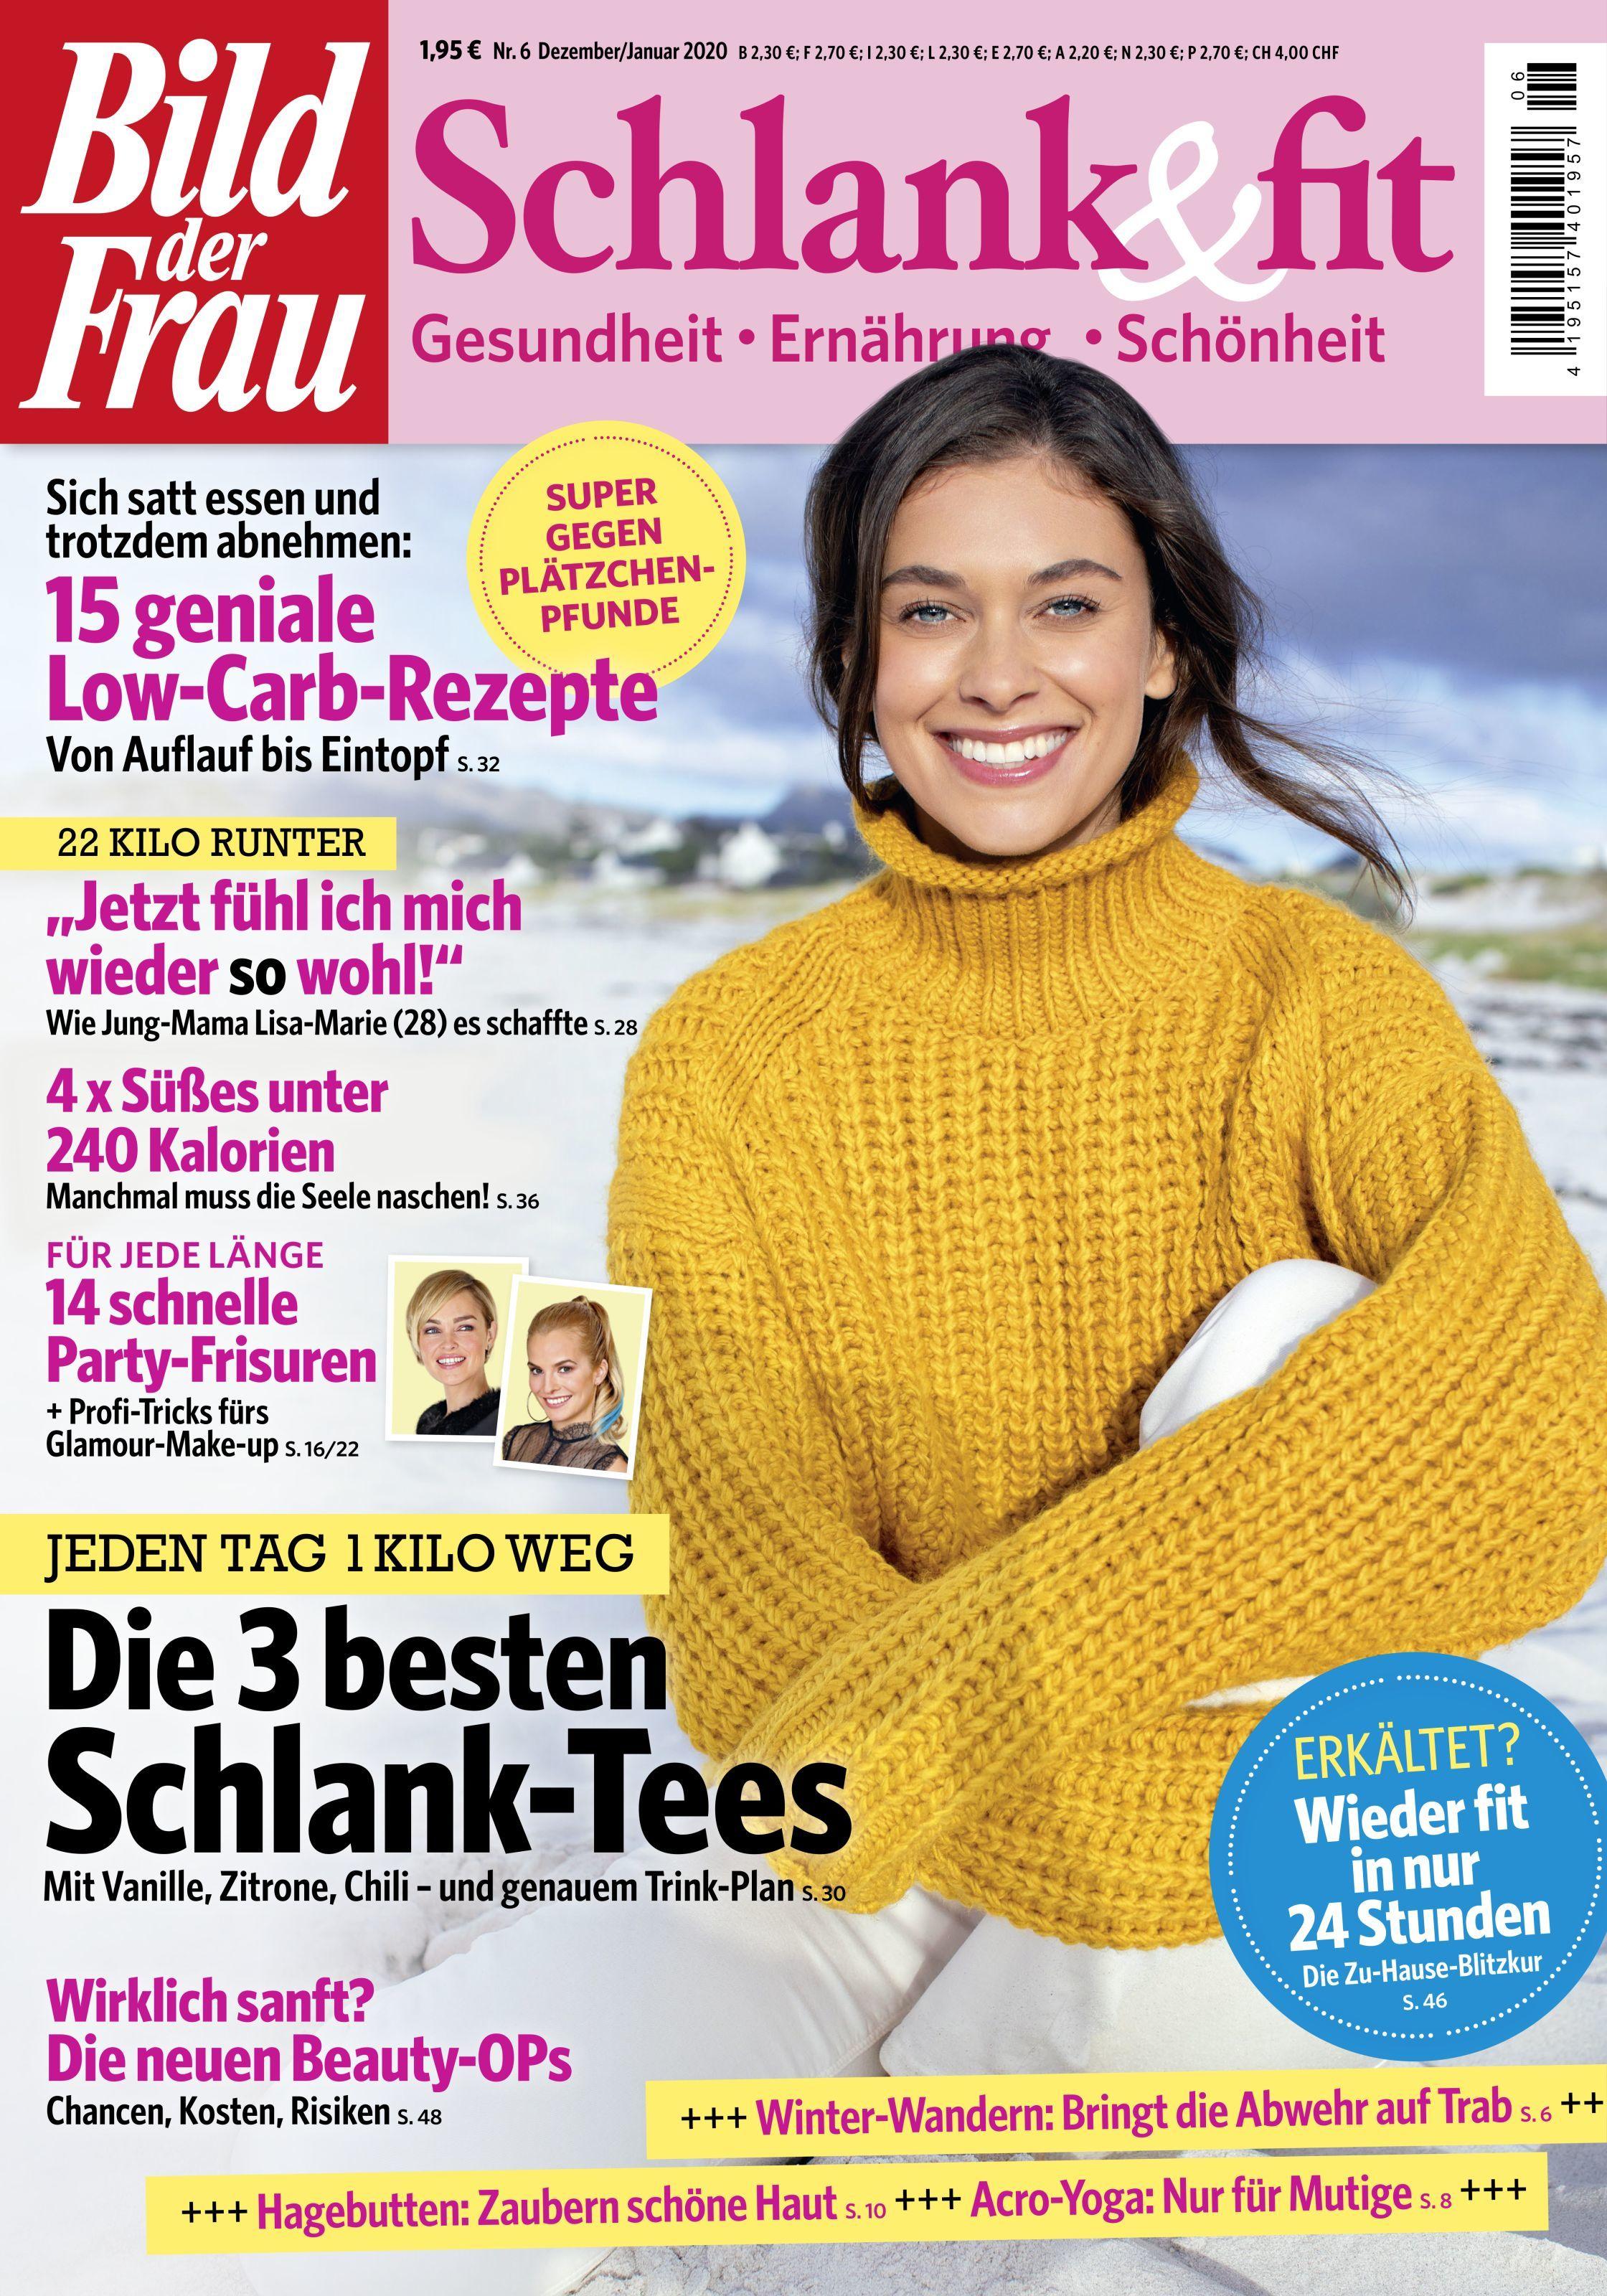 Bild der Frau – Schlank & fit – aktuelle Ausgabe 2019-06 ...